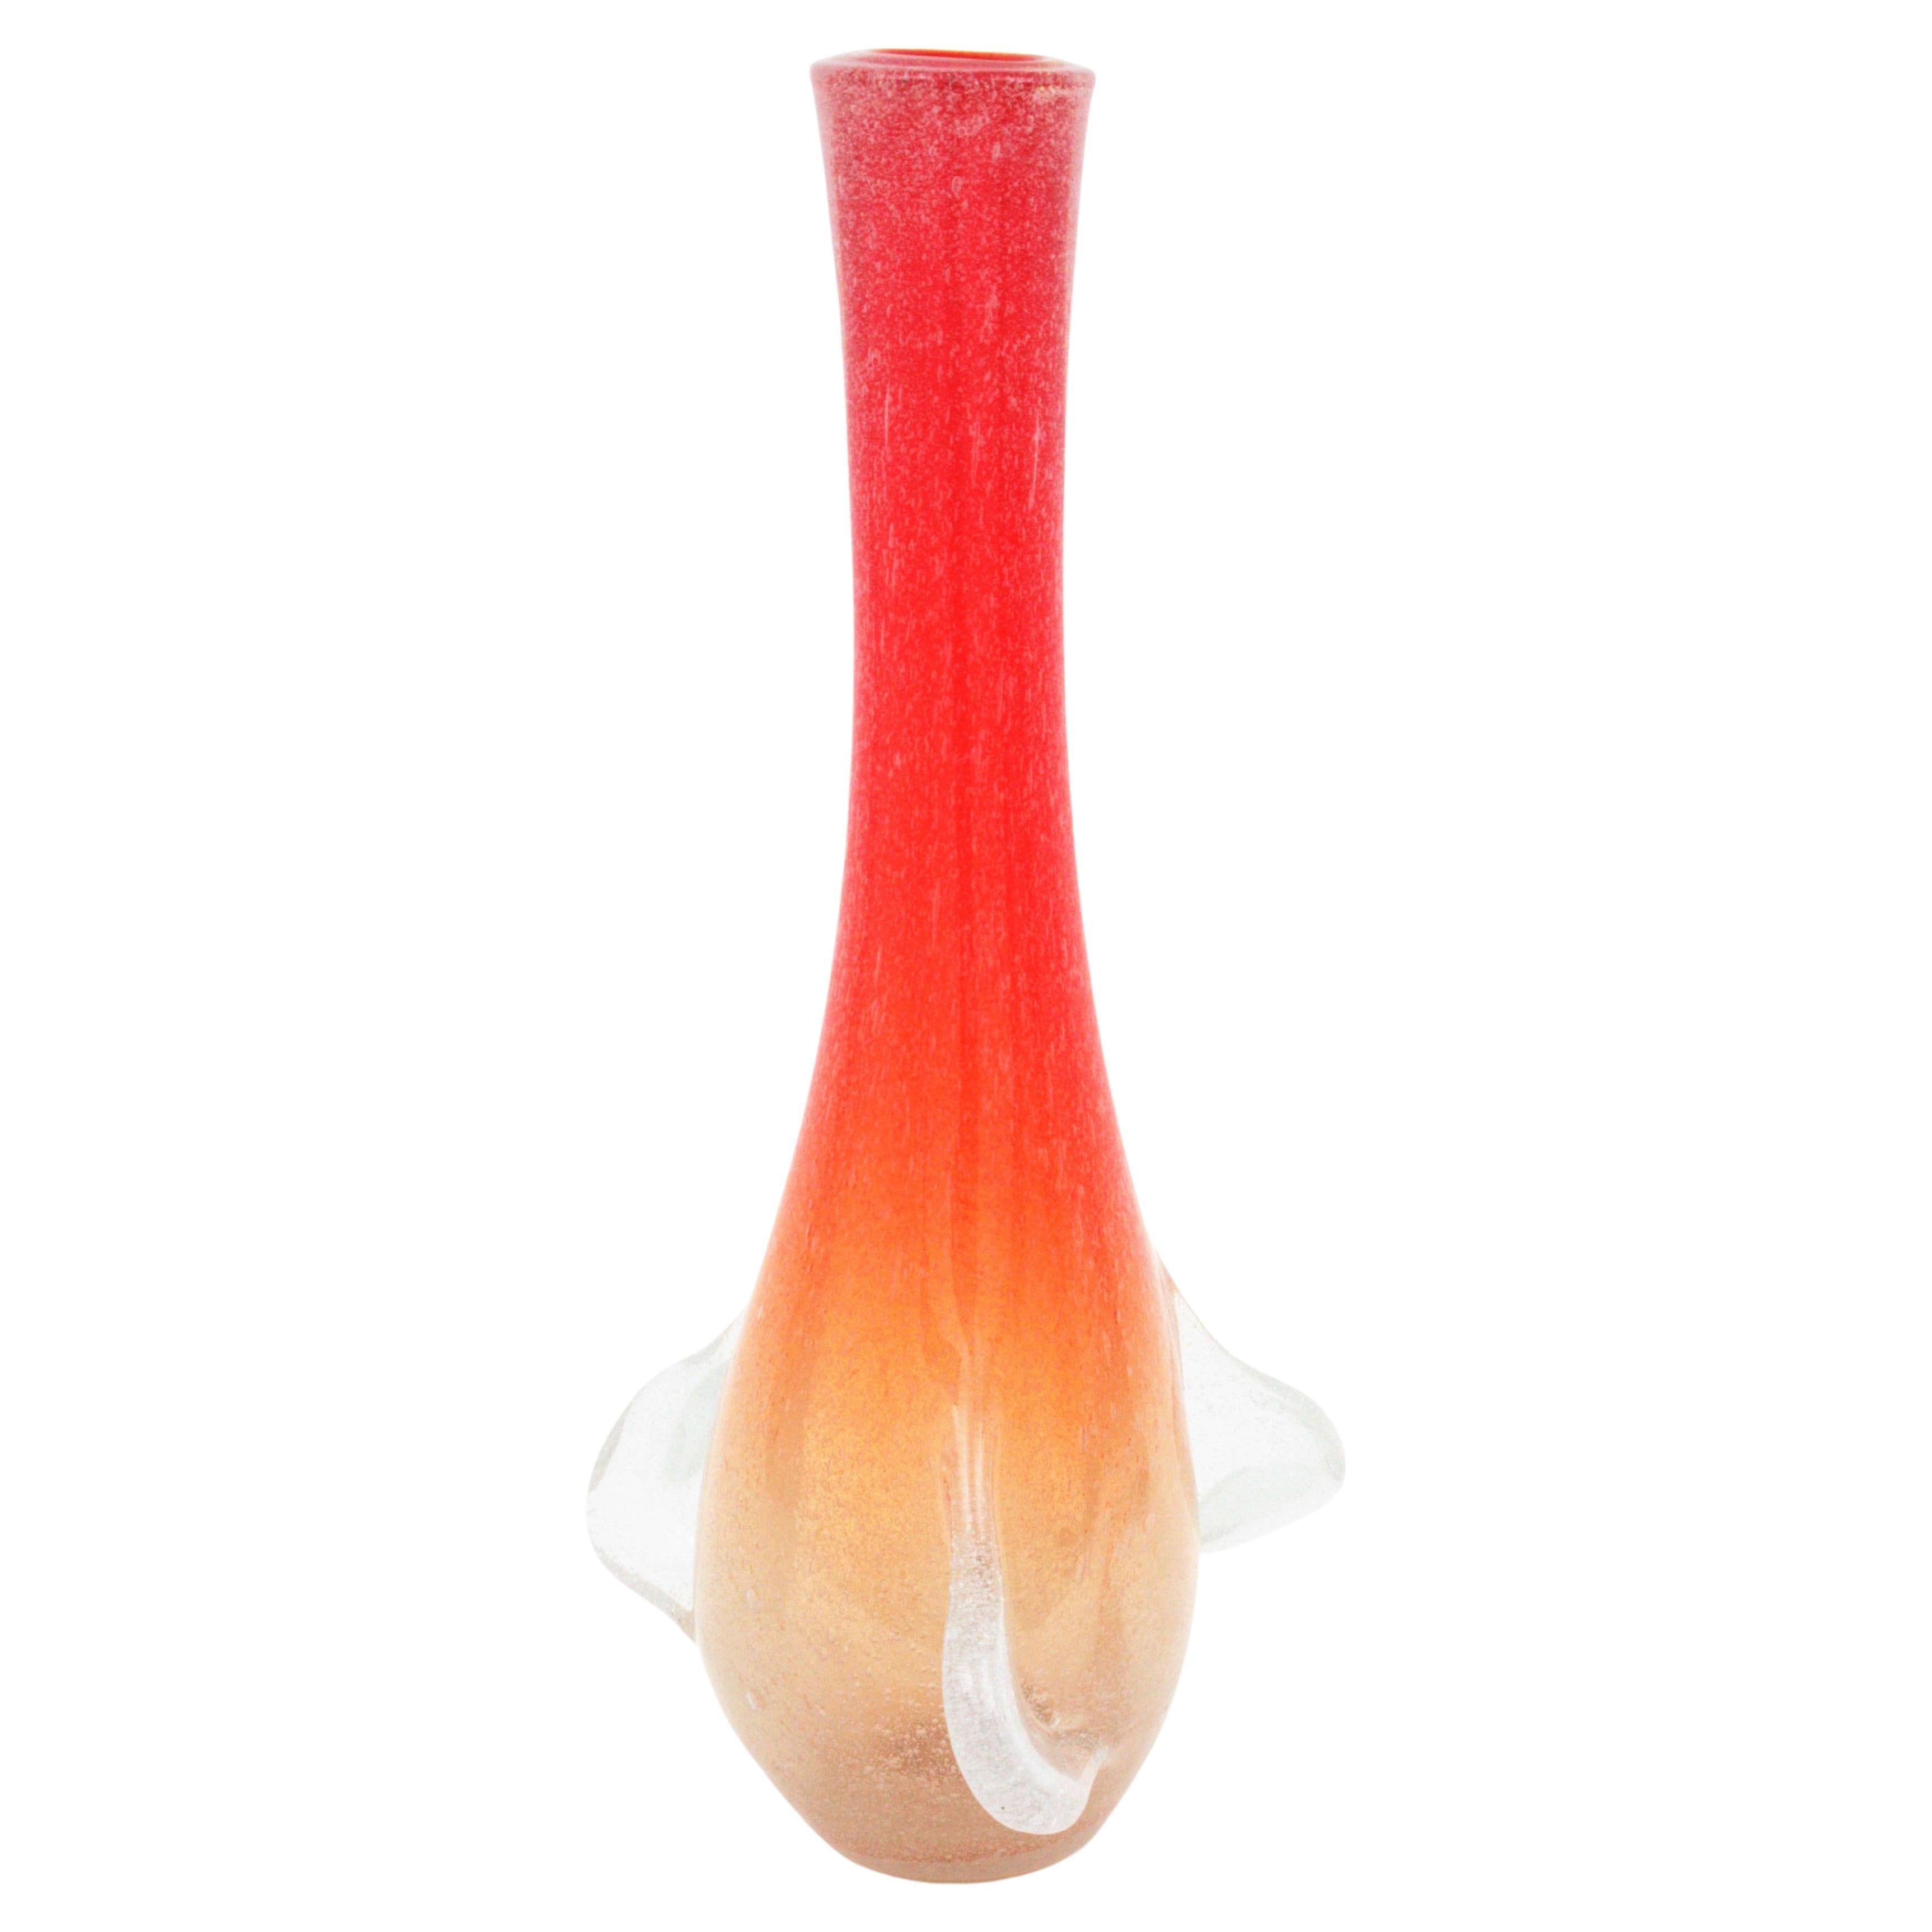 Vase surdimensionné en verre d'art Murano soufflé à la main avec des bulles d'air à l'intérieur. Attribué à Seguso Vetri d'Arte. Italie, années 1950.
Ce grand vase en verre de Murano, qui attire l'attention, est fabriqué dans des tons de rouge